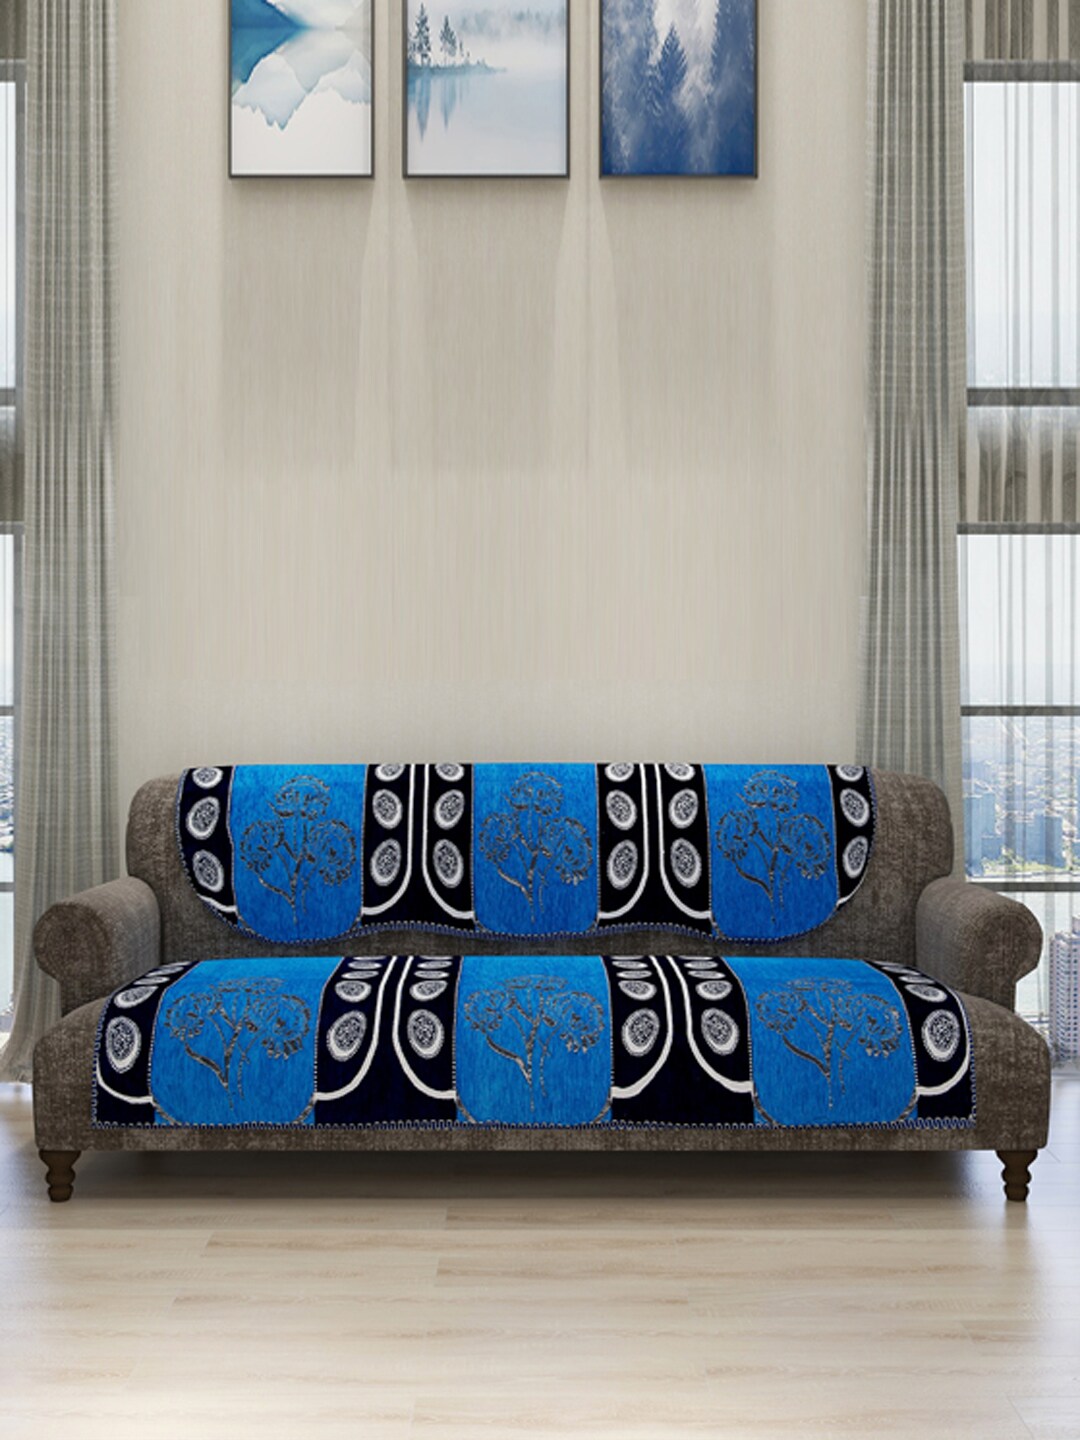 ROMEE Set Of 6 Blue Sofa Self-Design Sofa Cover Price in India